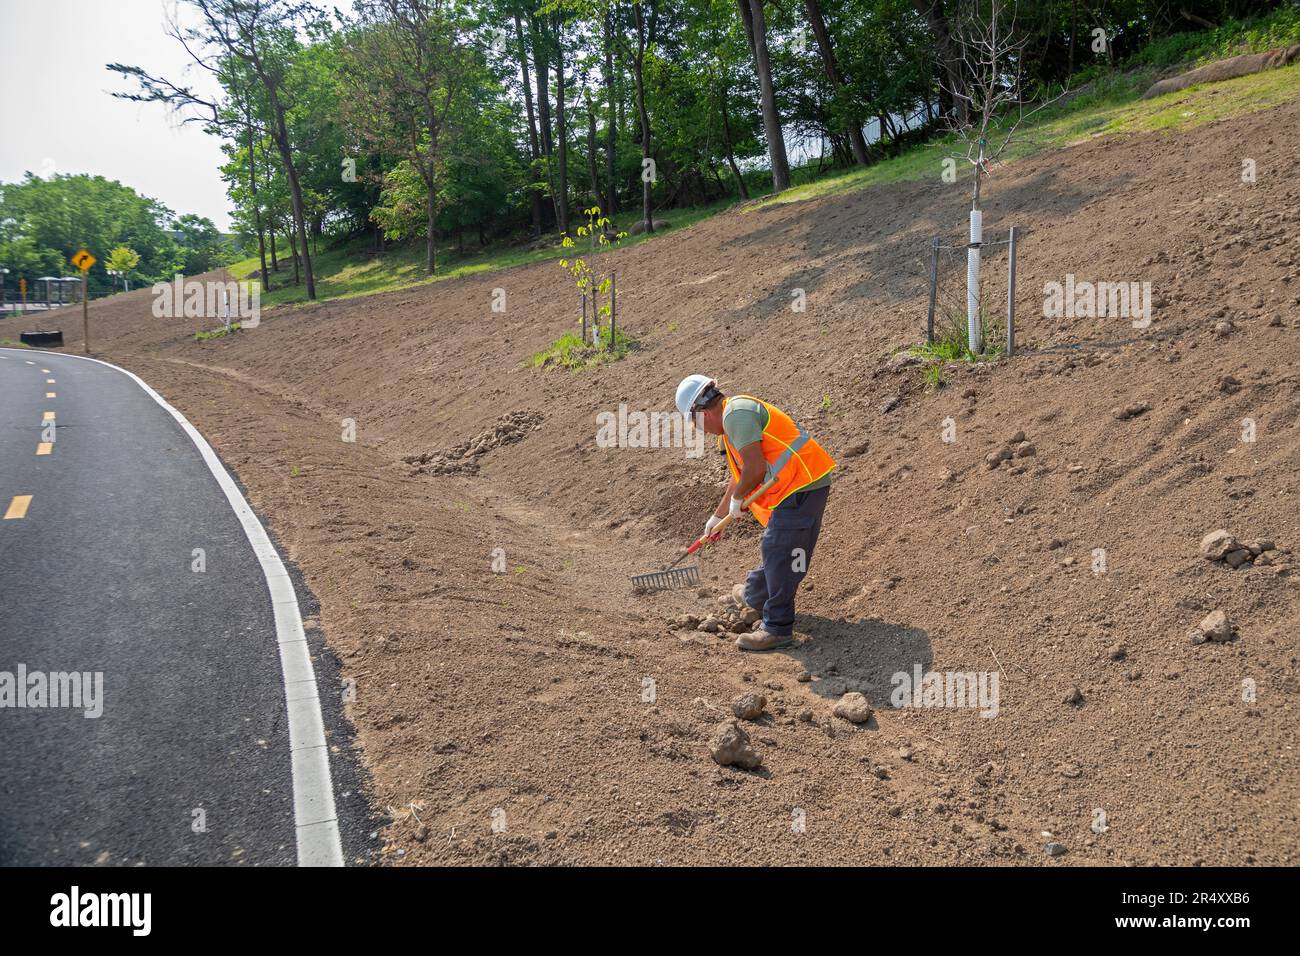 Washington, DC: Ein Arbeiter beendet die Landschaftsgestaltung entlang eines neuen Abschnitts des Metropolitan Branch Trail, einem Rad-/Wanderweg, der von Union Cents führt Stockfoto